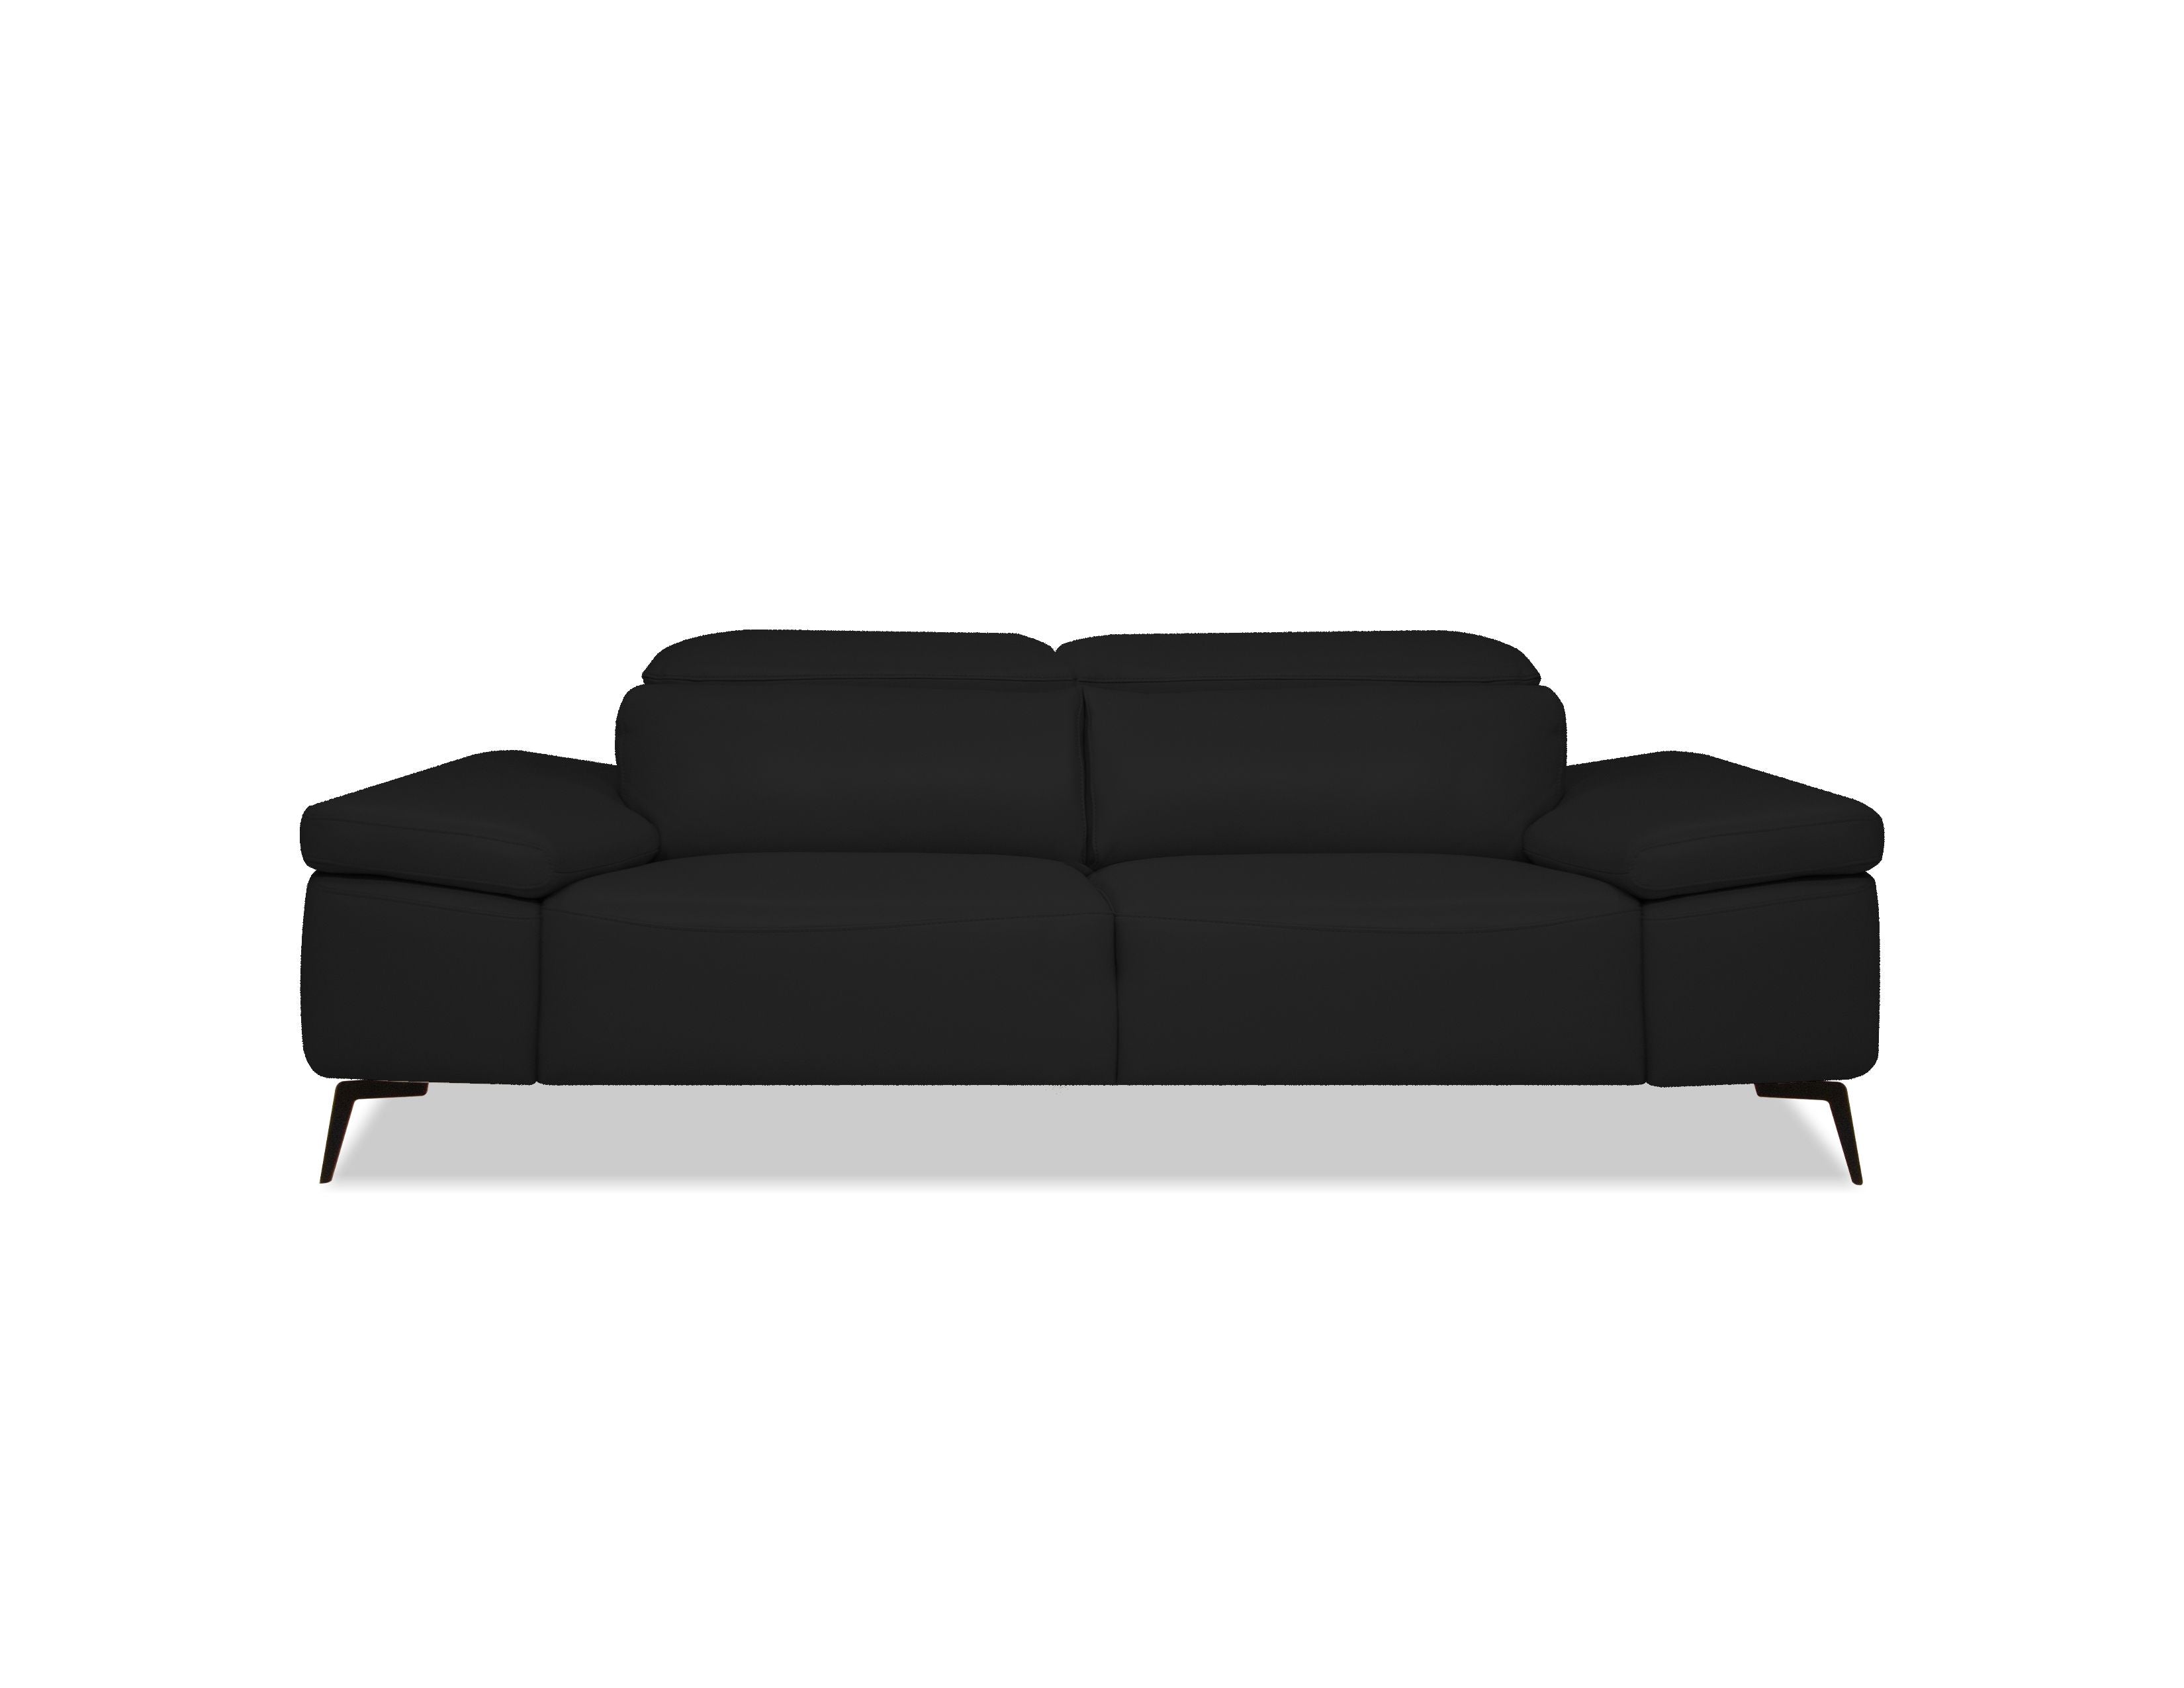 CAMELLO Leather Sofa in Black